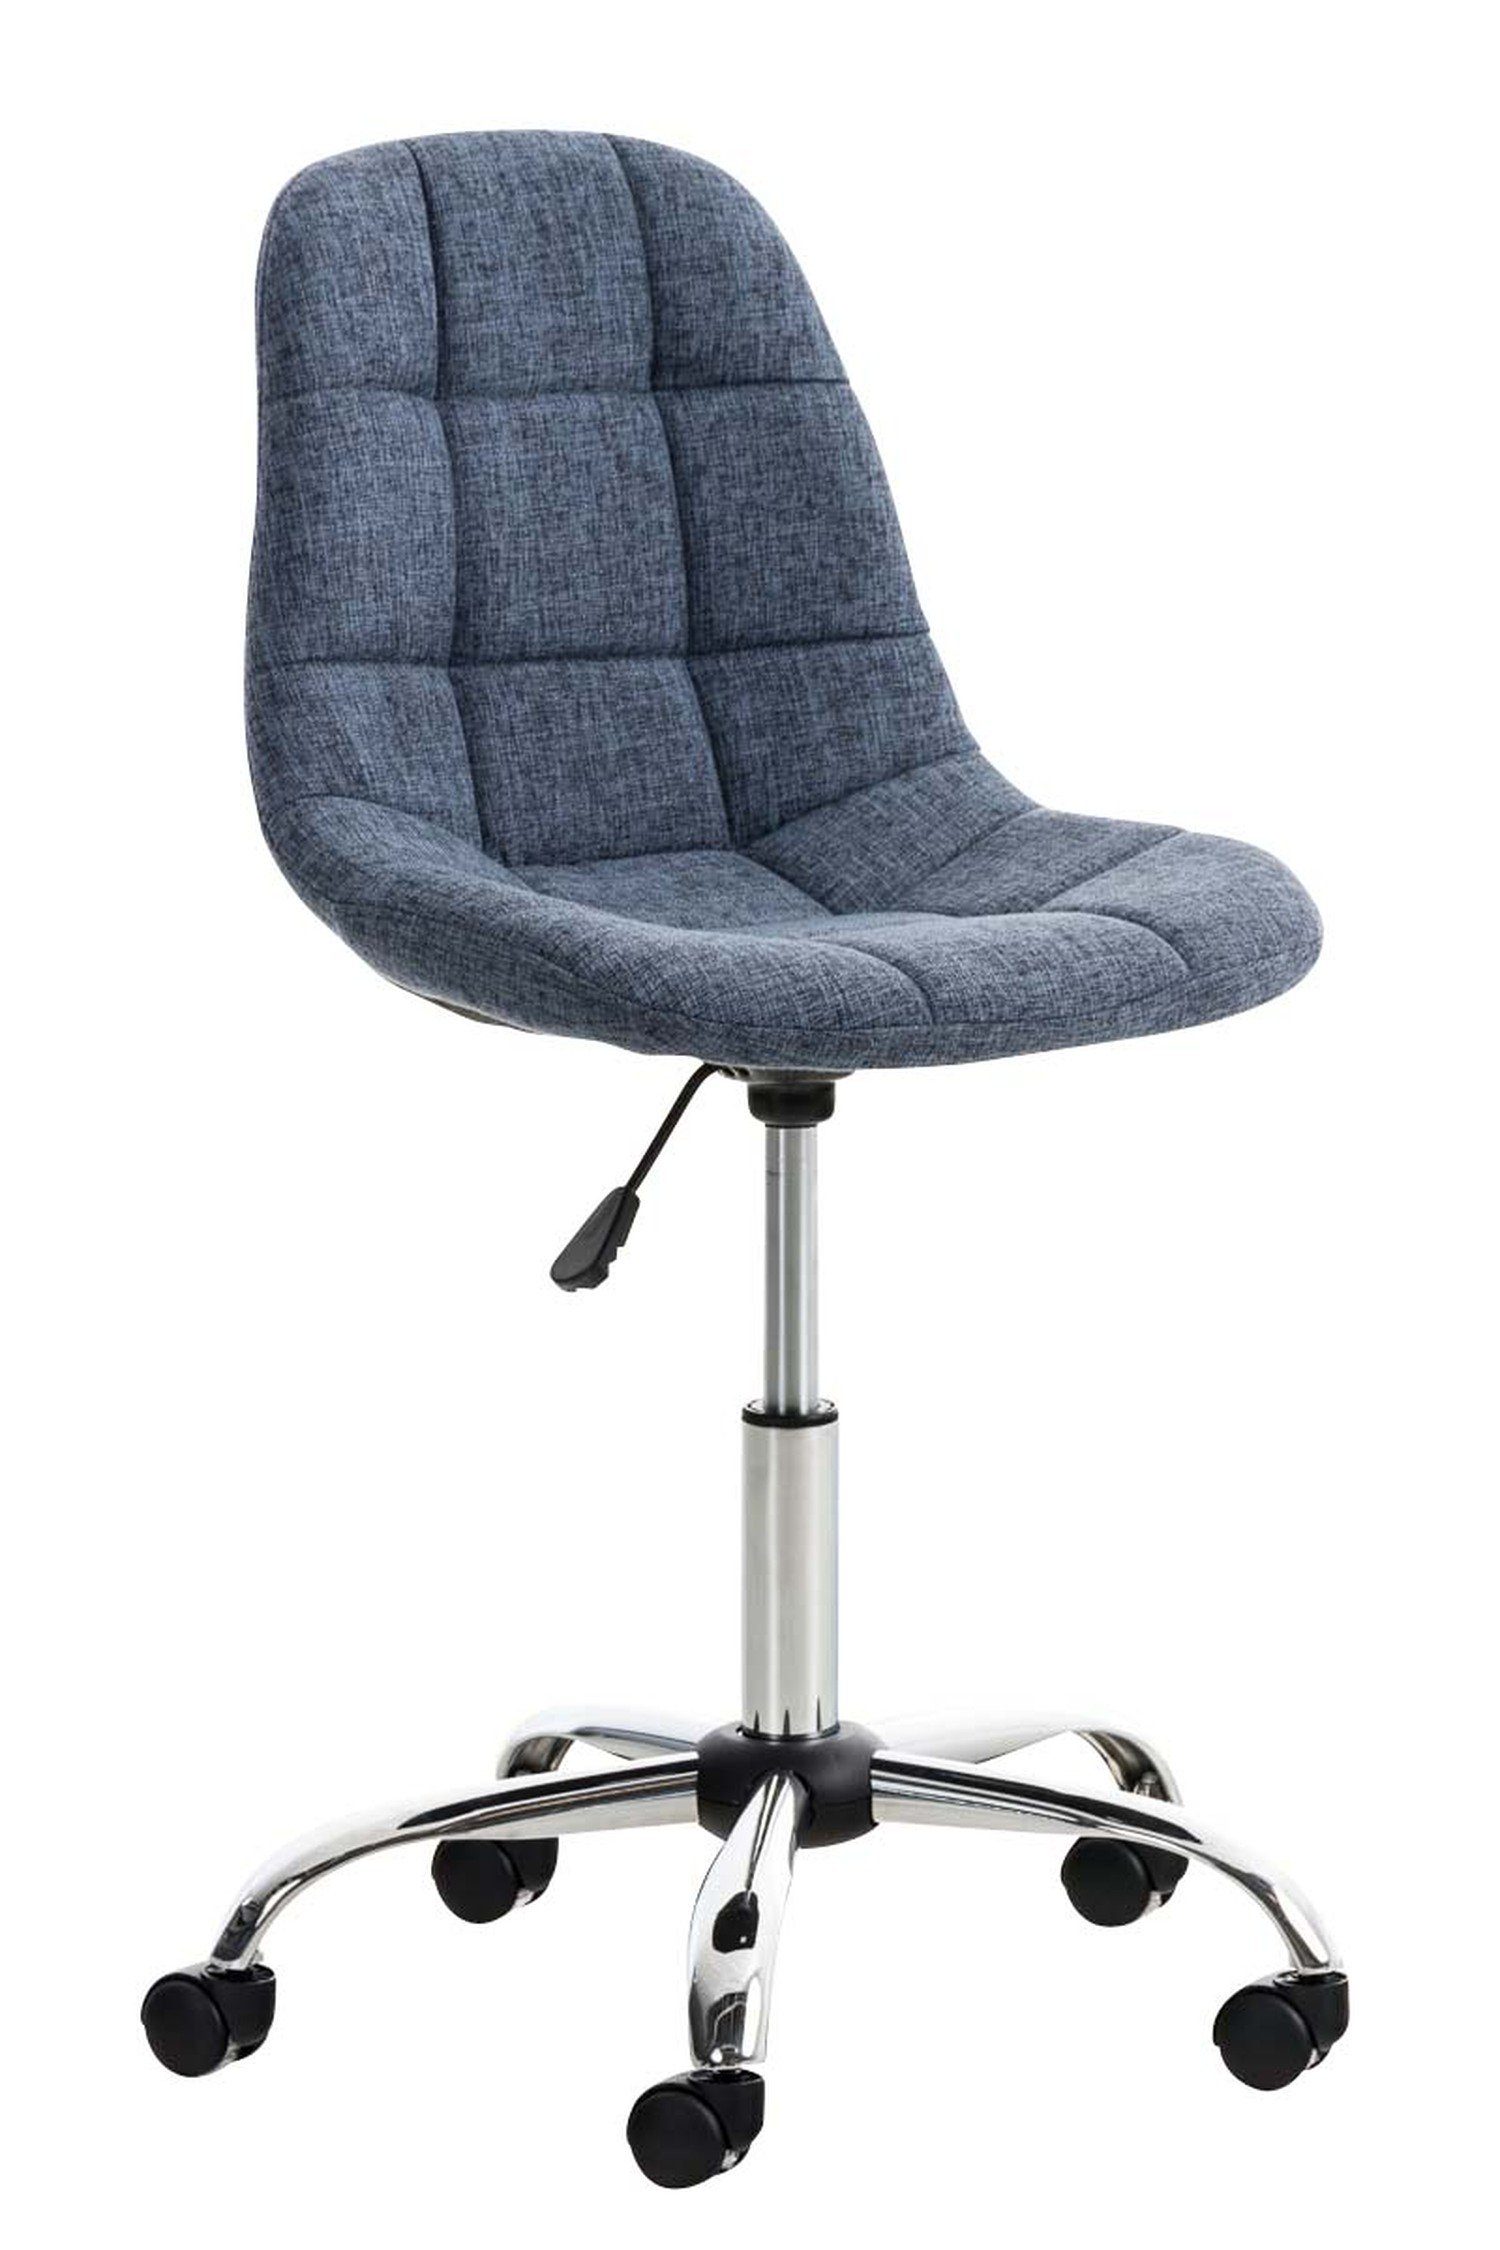 TPFLiving Bürostuhl Emily mit bequemer Rückenlehne - höhenverstellbar und 360° drehbar (Schreibtischstuhl, Drehstuhl, Chefsessel, Konferenzstuhl), Gestell: Metall chrom - Sitzfläche: Stoff blau